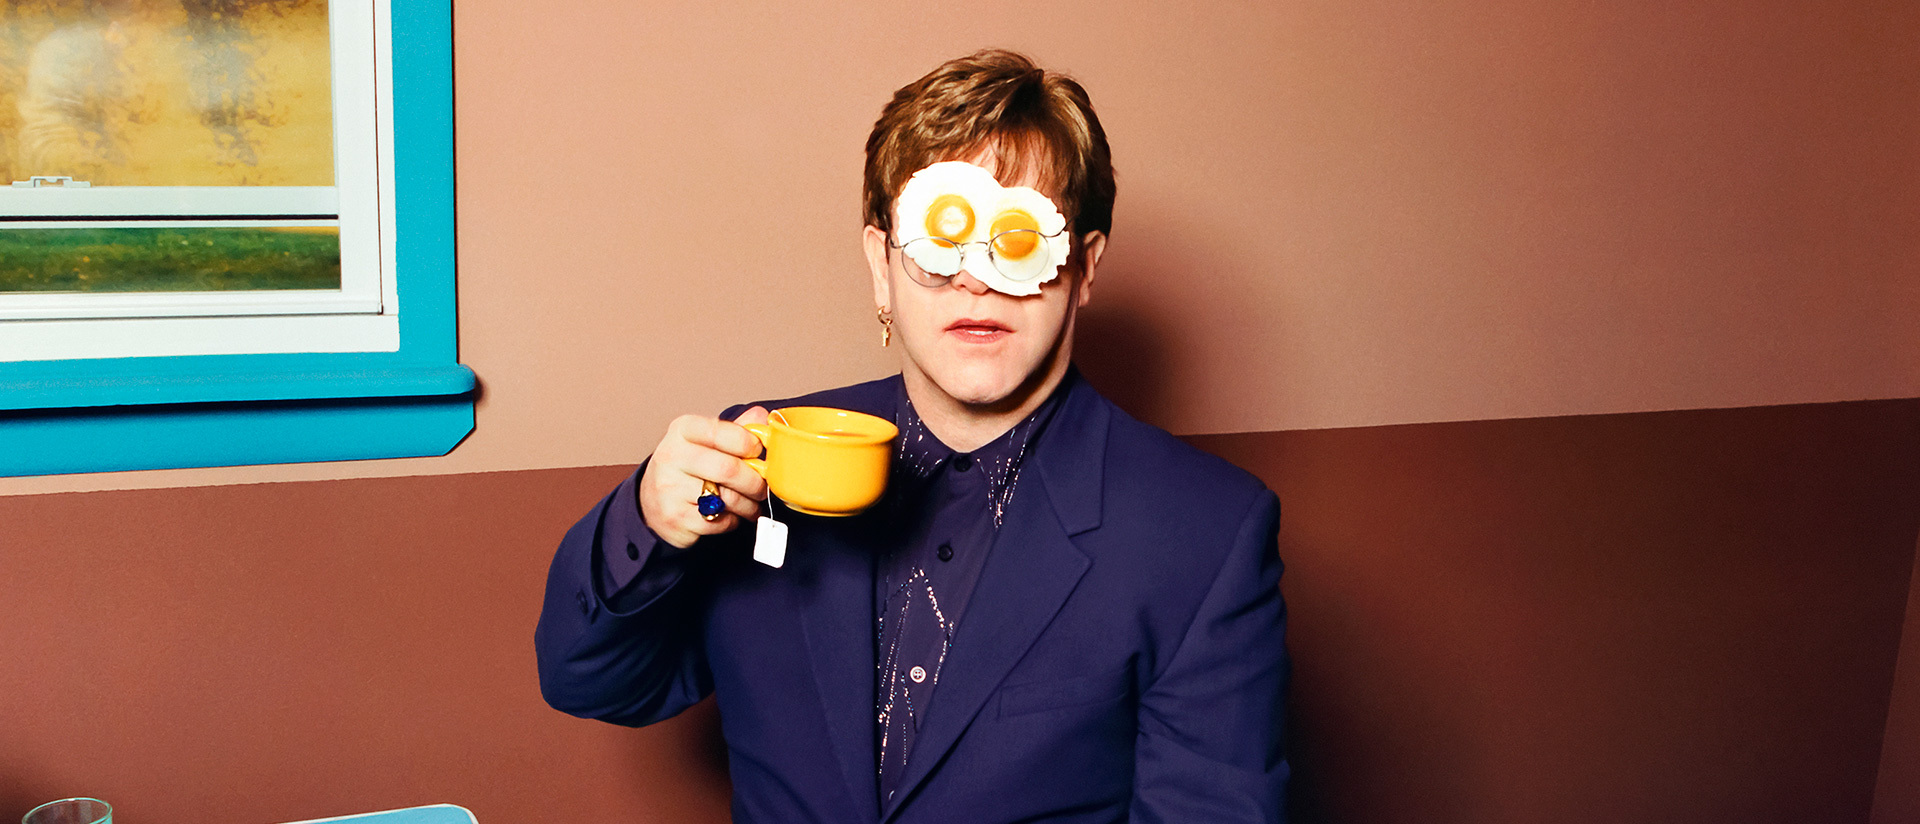 Φωτογραφίες που αγάπησε ο Elton John: ένα εύθραυστο σύμπαν στο Victoria and Albert Museum 